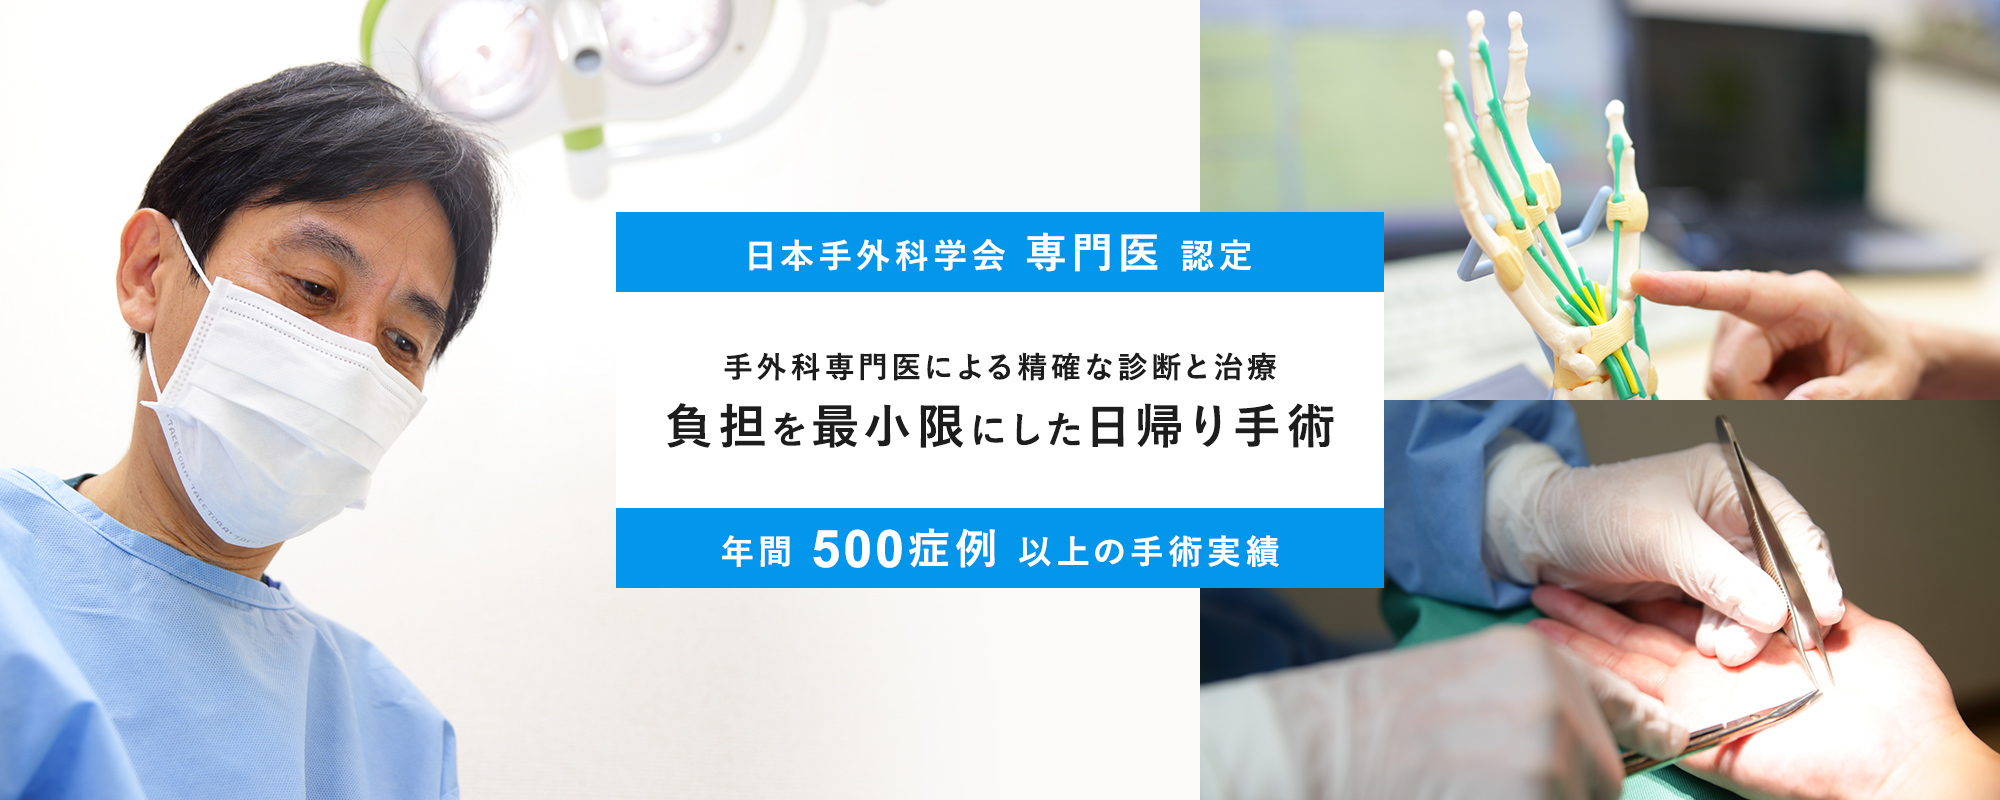 日本手外科学会専門医認定 手外科専門医による精確な診断と治療 負担を最小限にした日帰り手術 年間500症例以上の手術実績